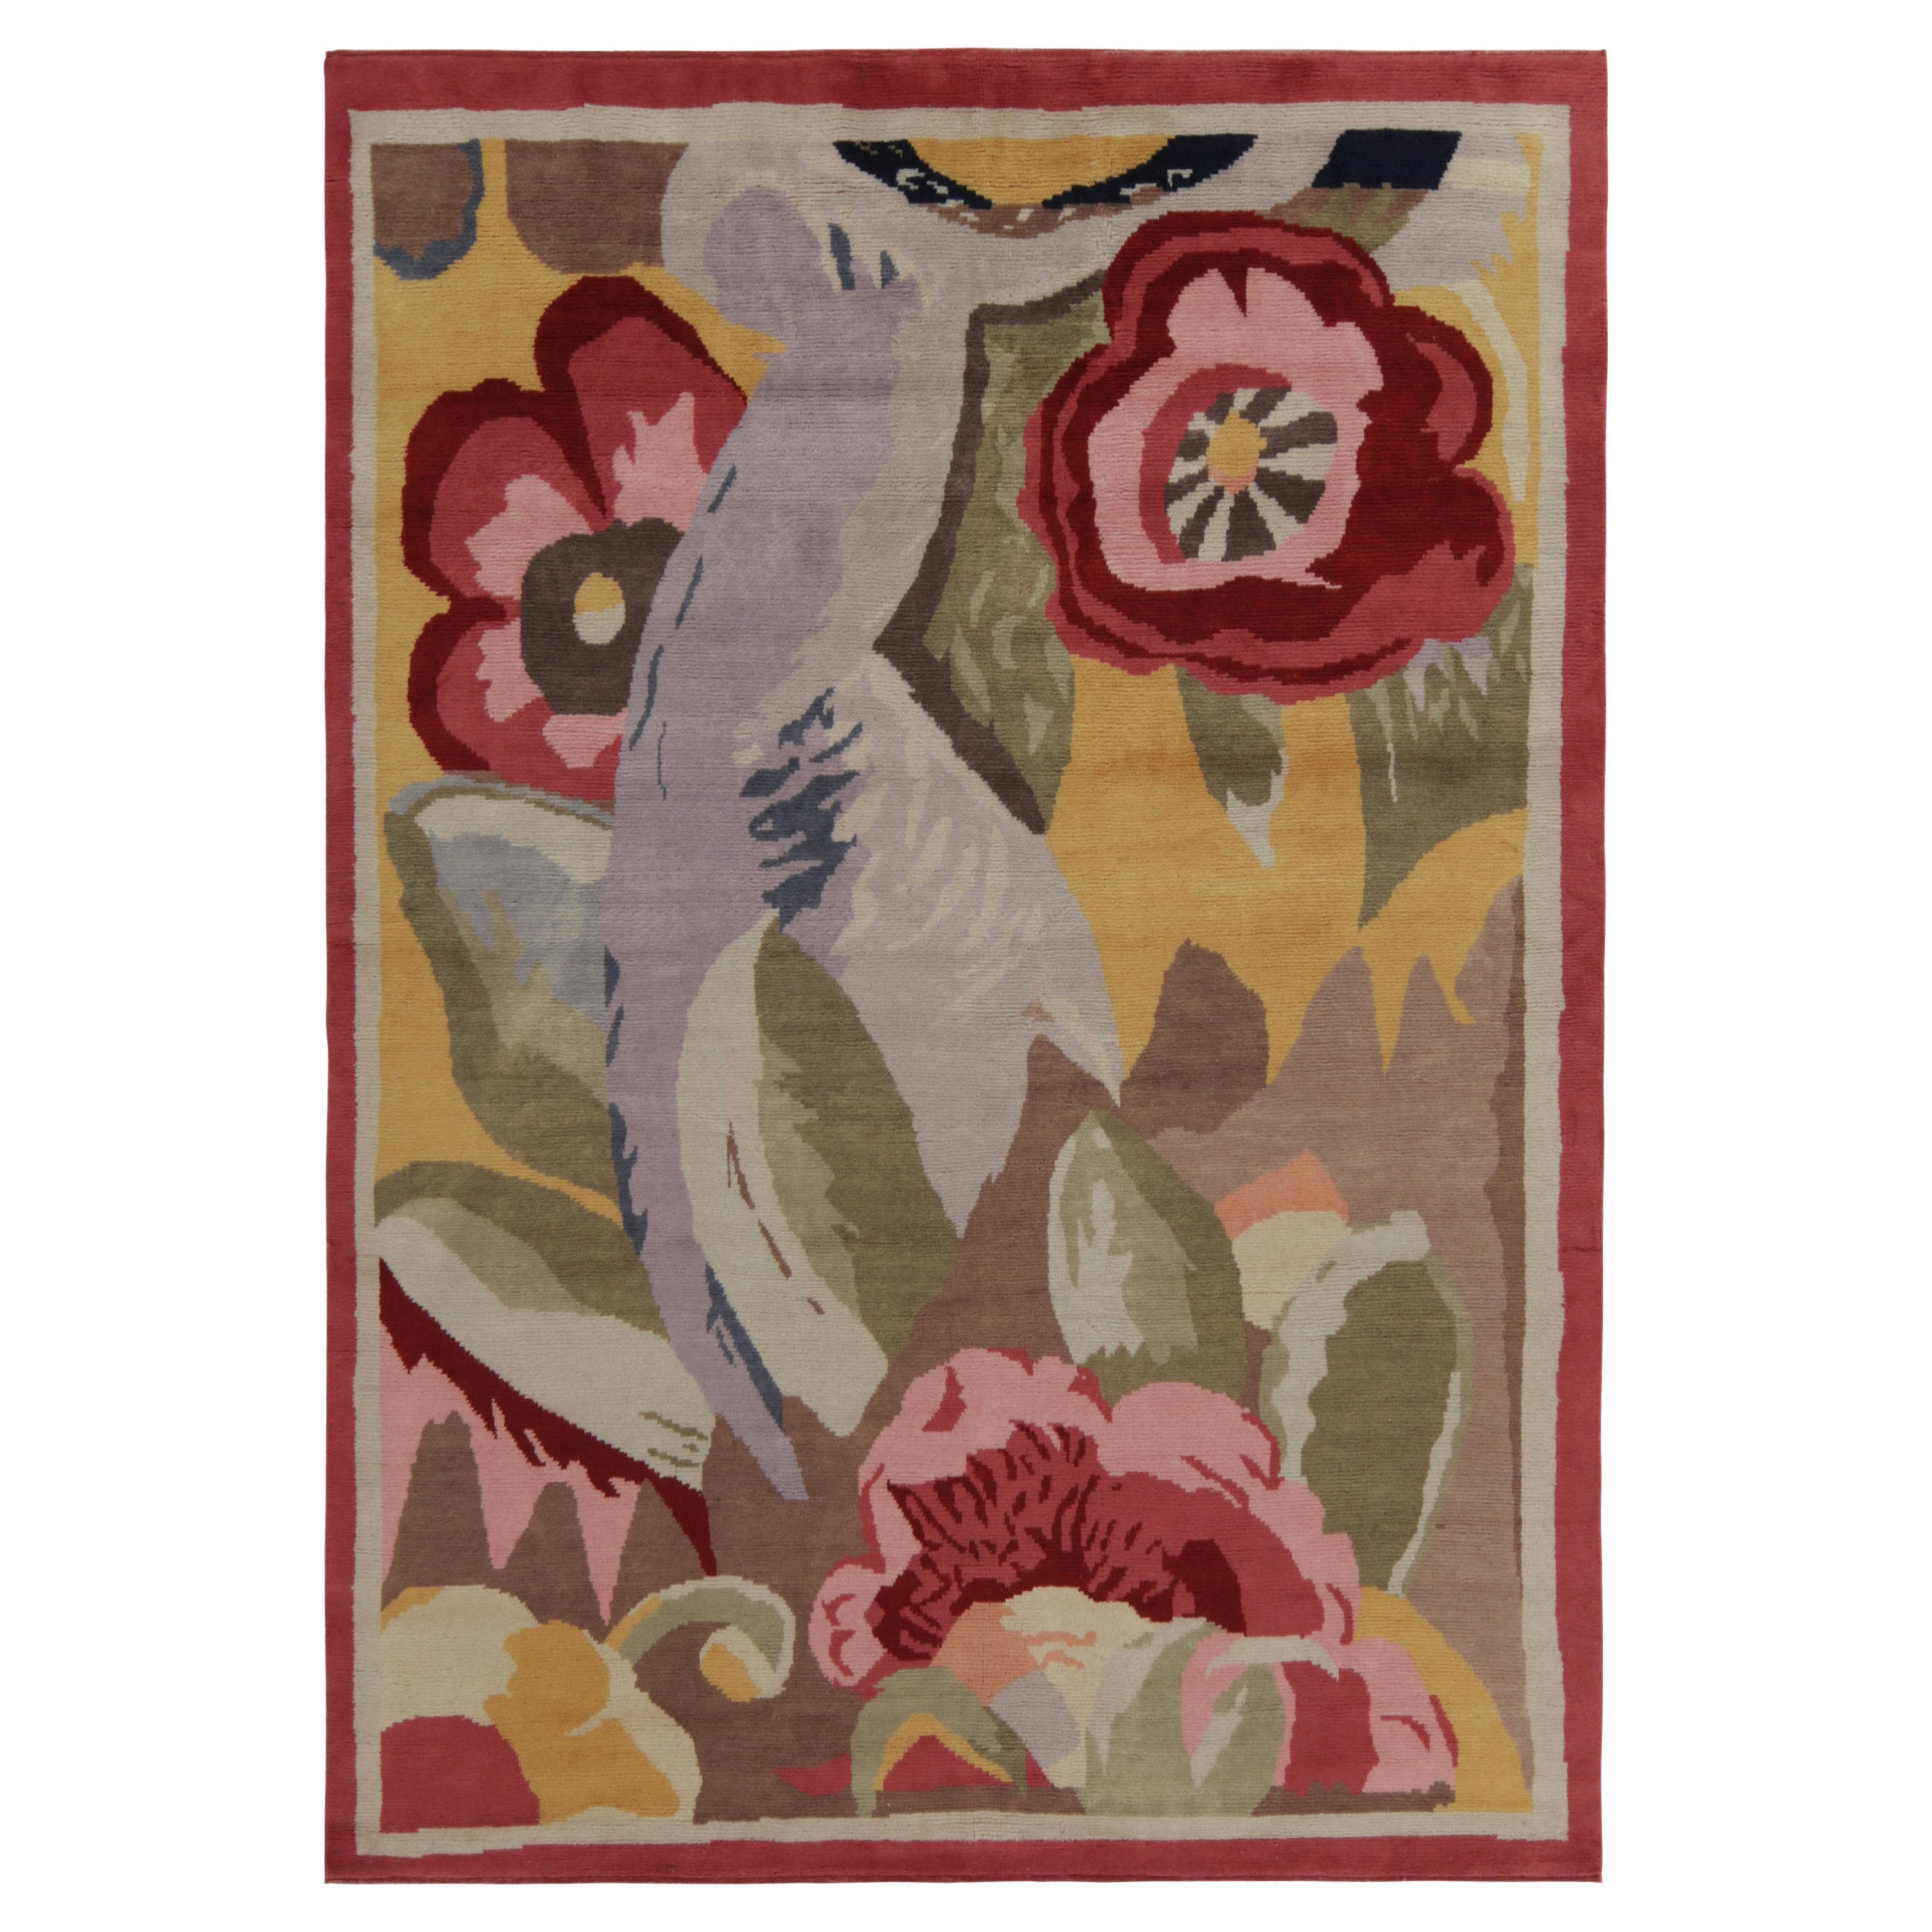 Tapis & Kilims - Tapis de style déco français en polychrome, motifs floraux impressionnistes